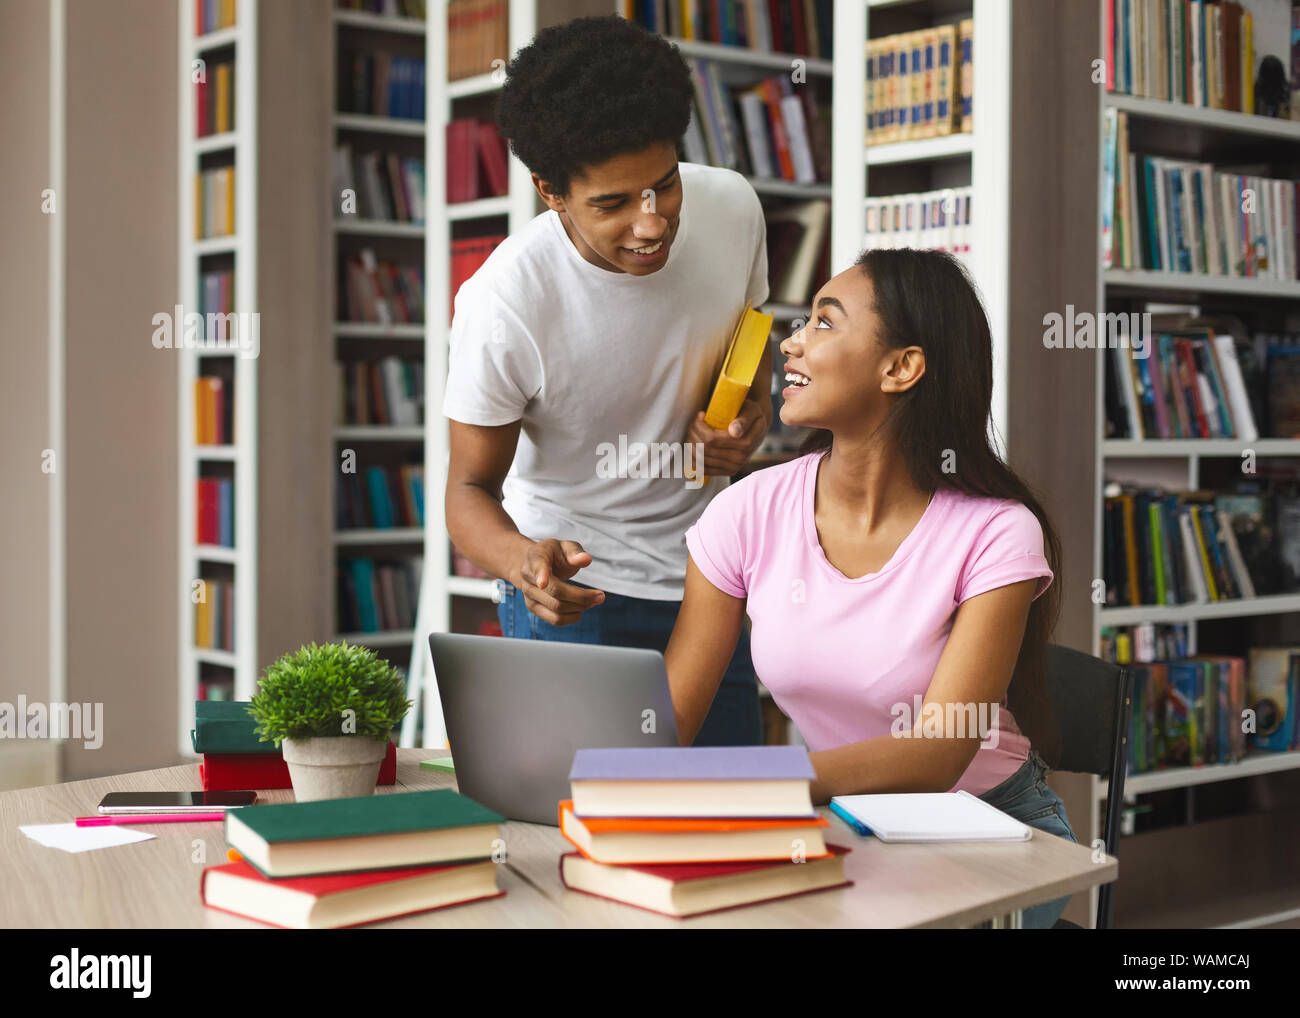 Ragazzo nero offrendo supporto alla ragazza afro in libreria Foto Stock